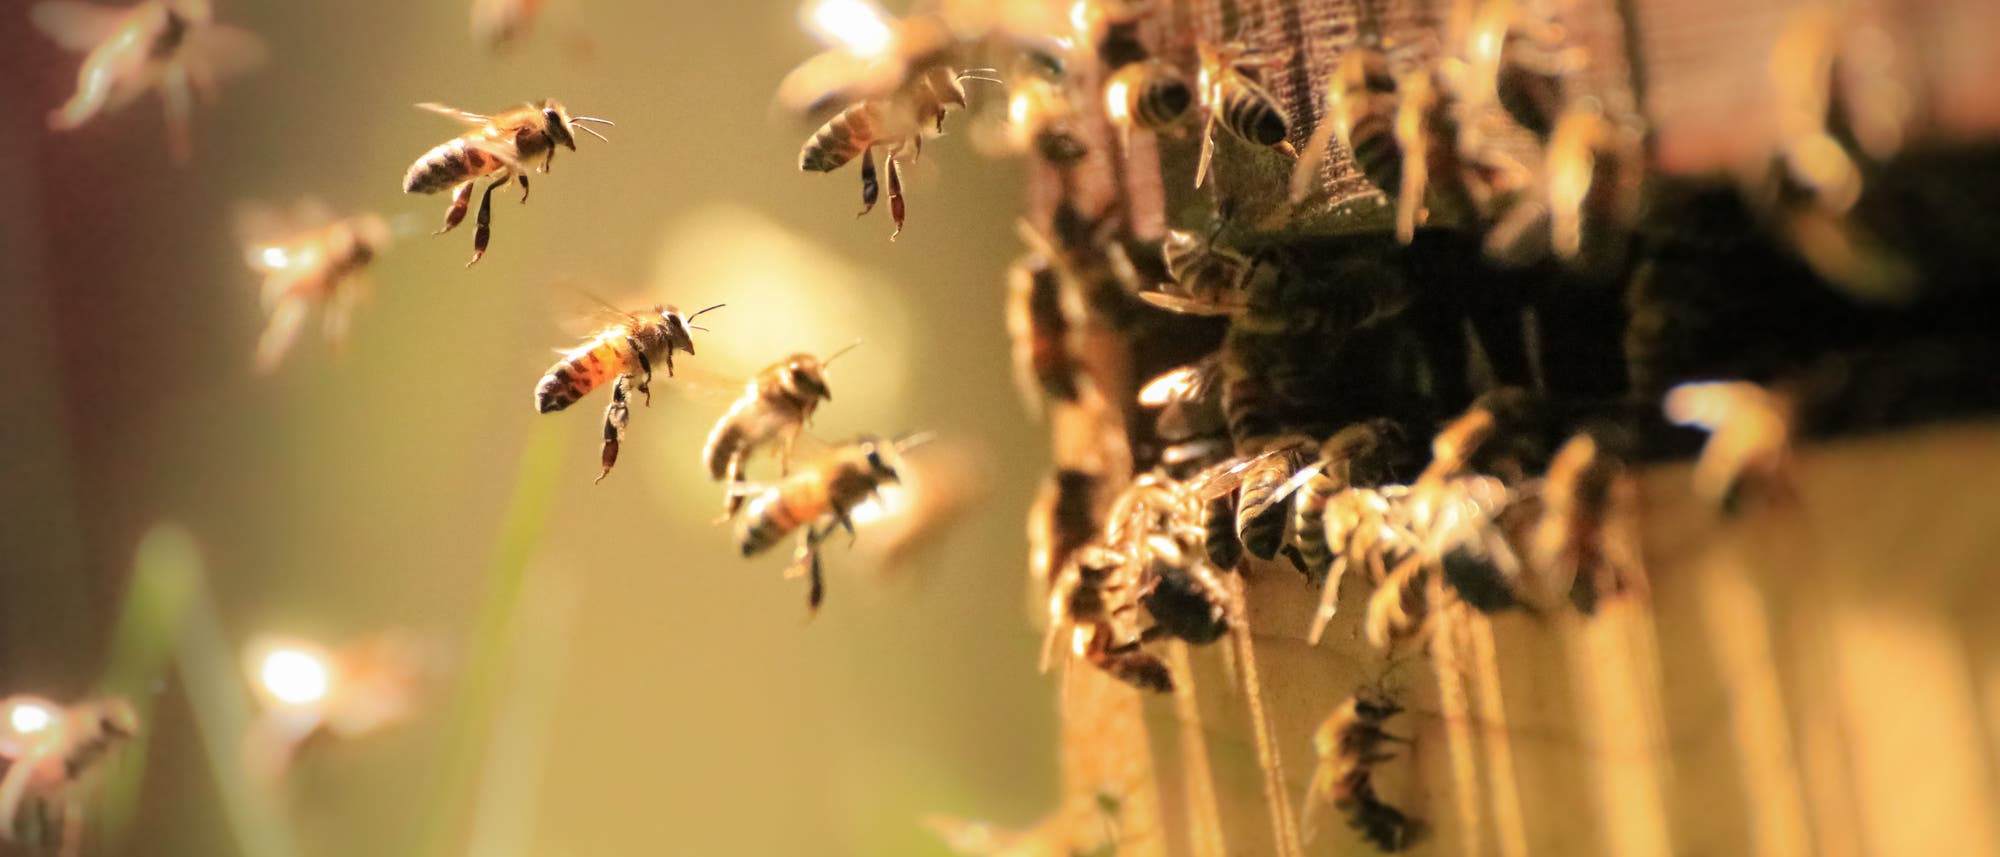 Bienen im Anflug auf den Stock.